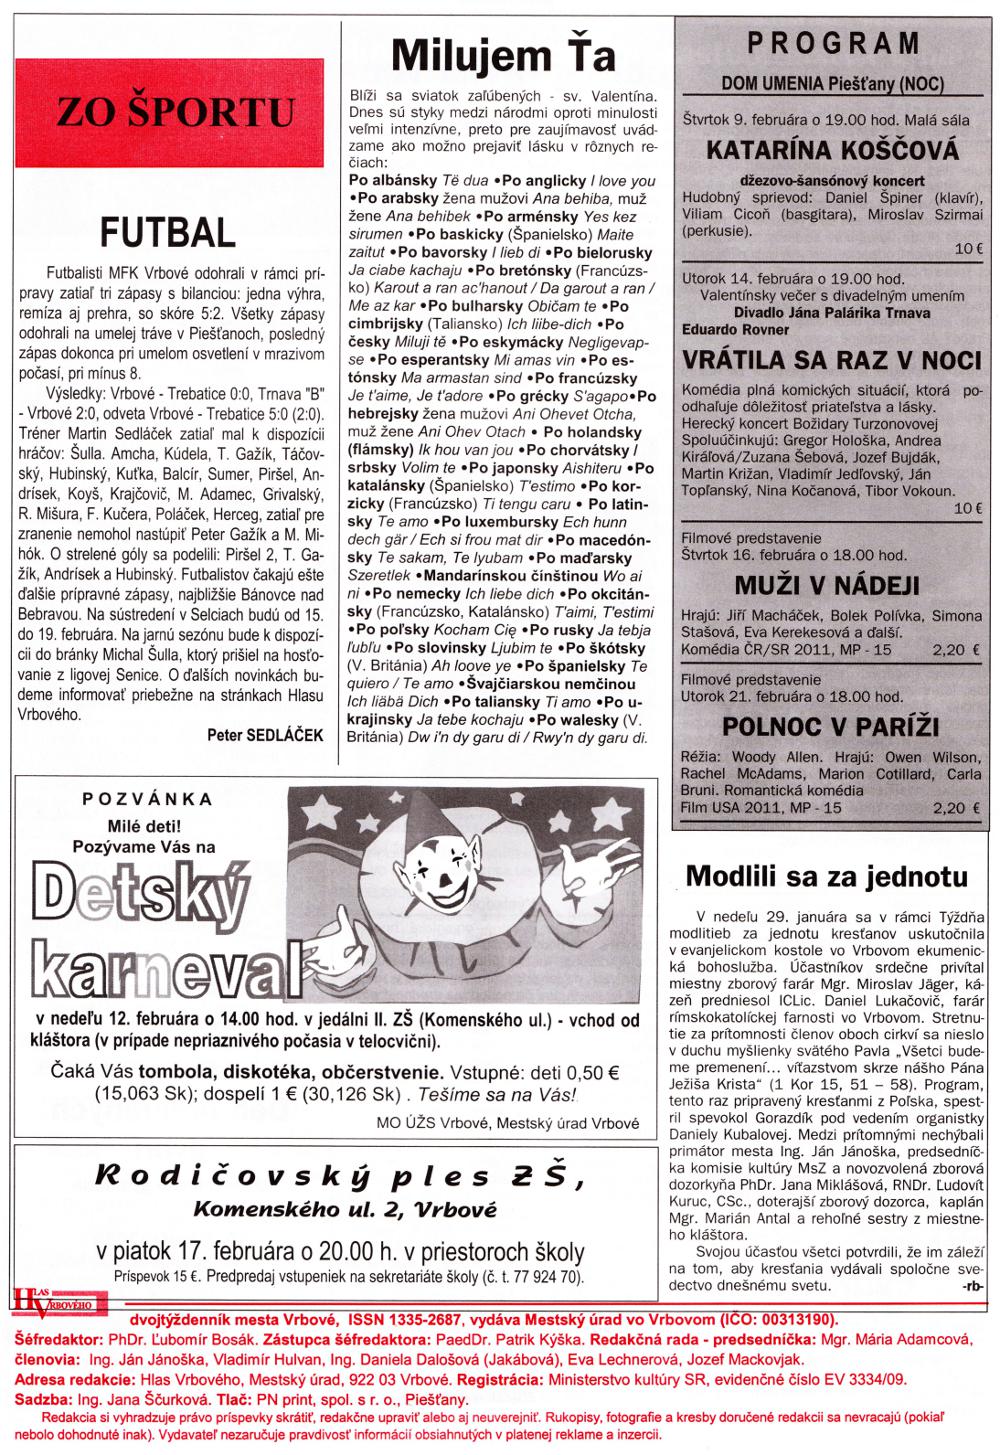 Hlas Vrbového 03/2012, strana 8